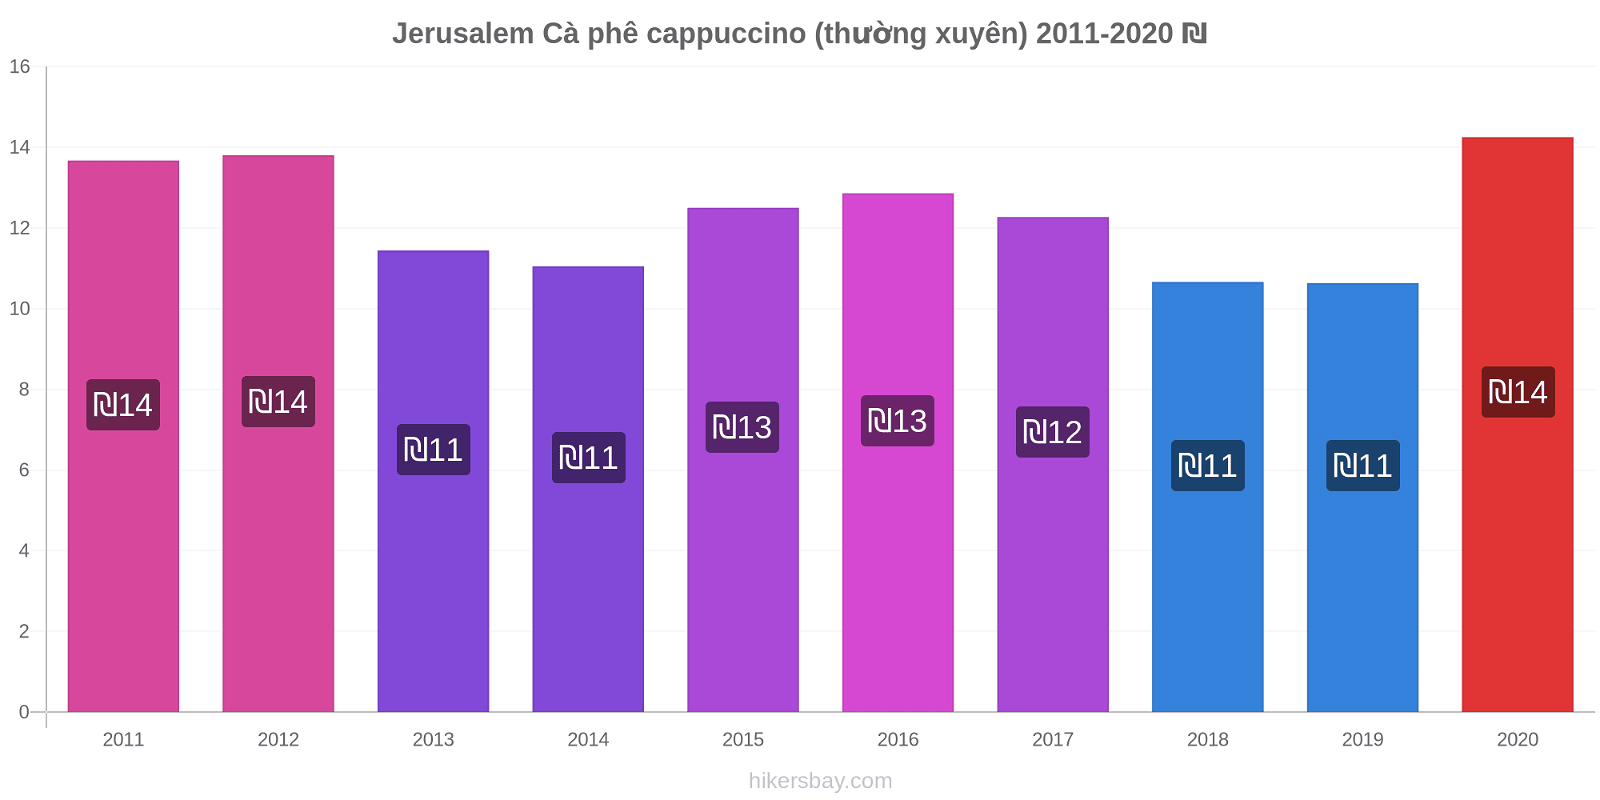 Jerusalem thay đổi giá Cà phê cappuccino (thường xuyên) hikersbay.com